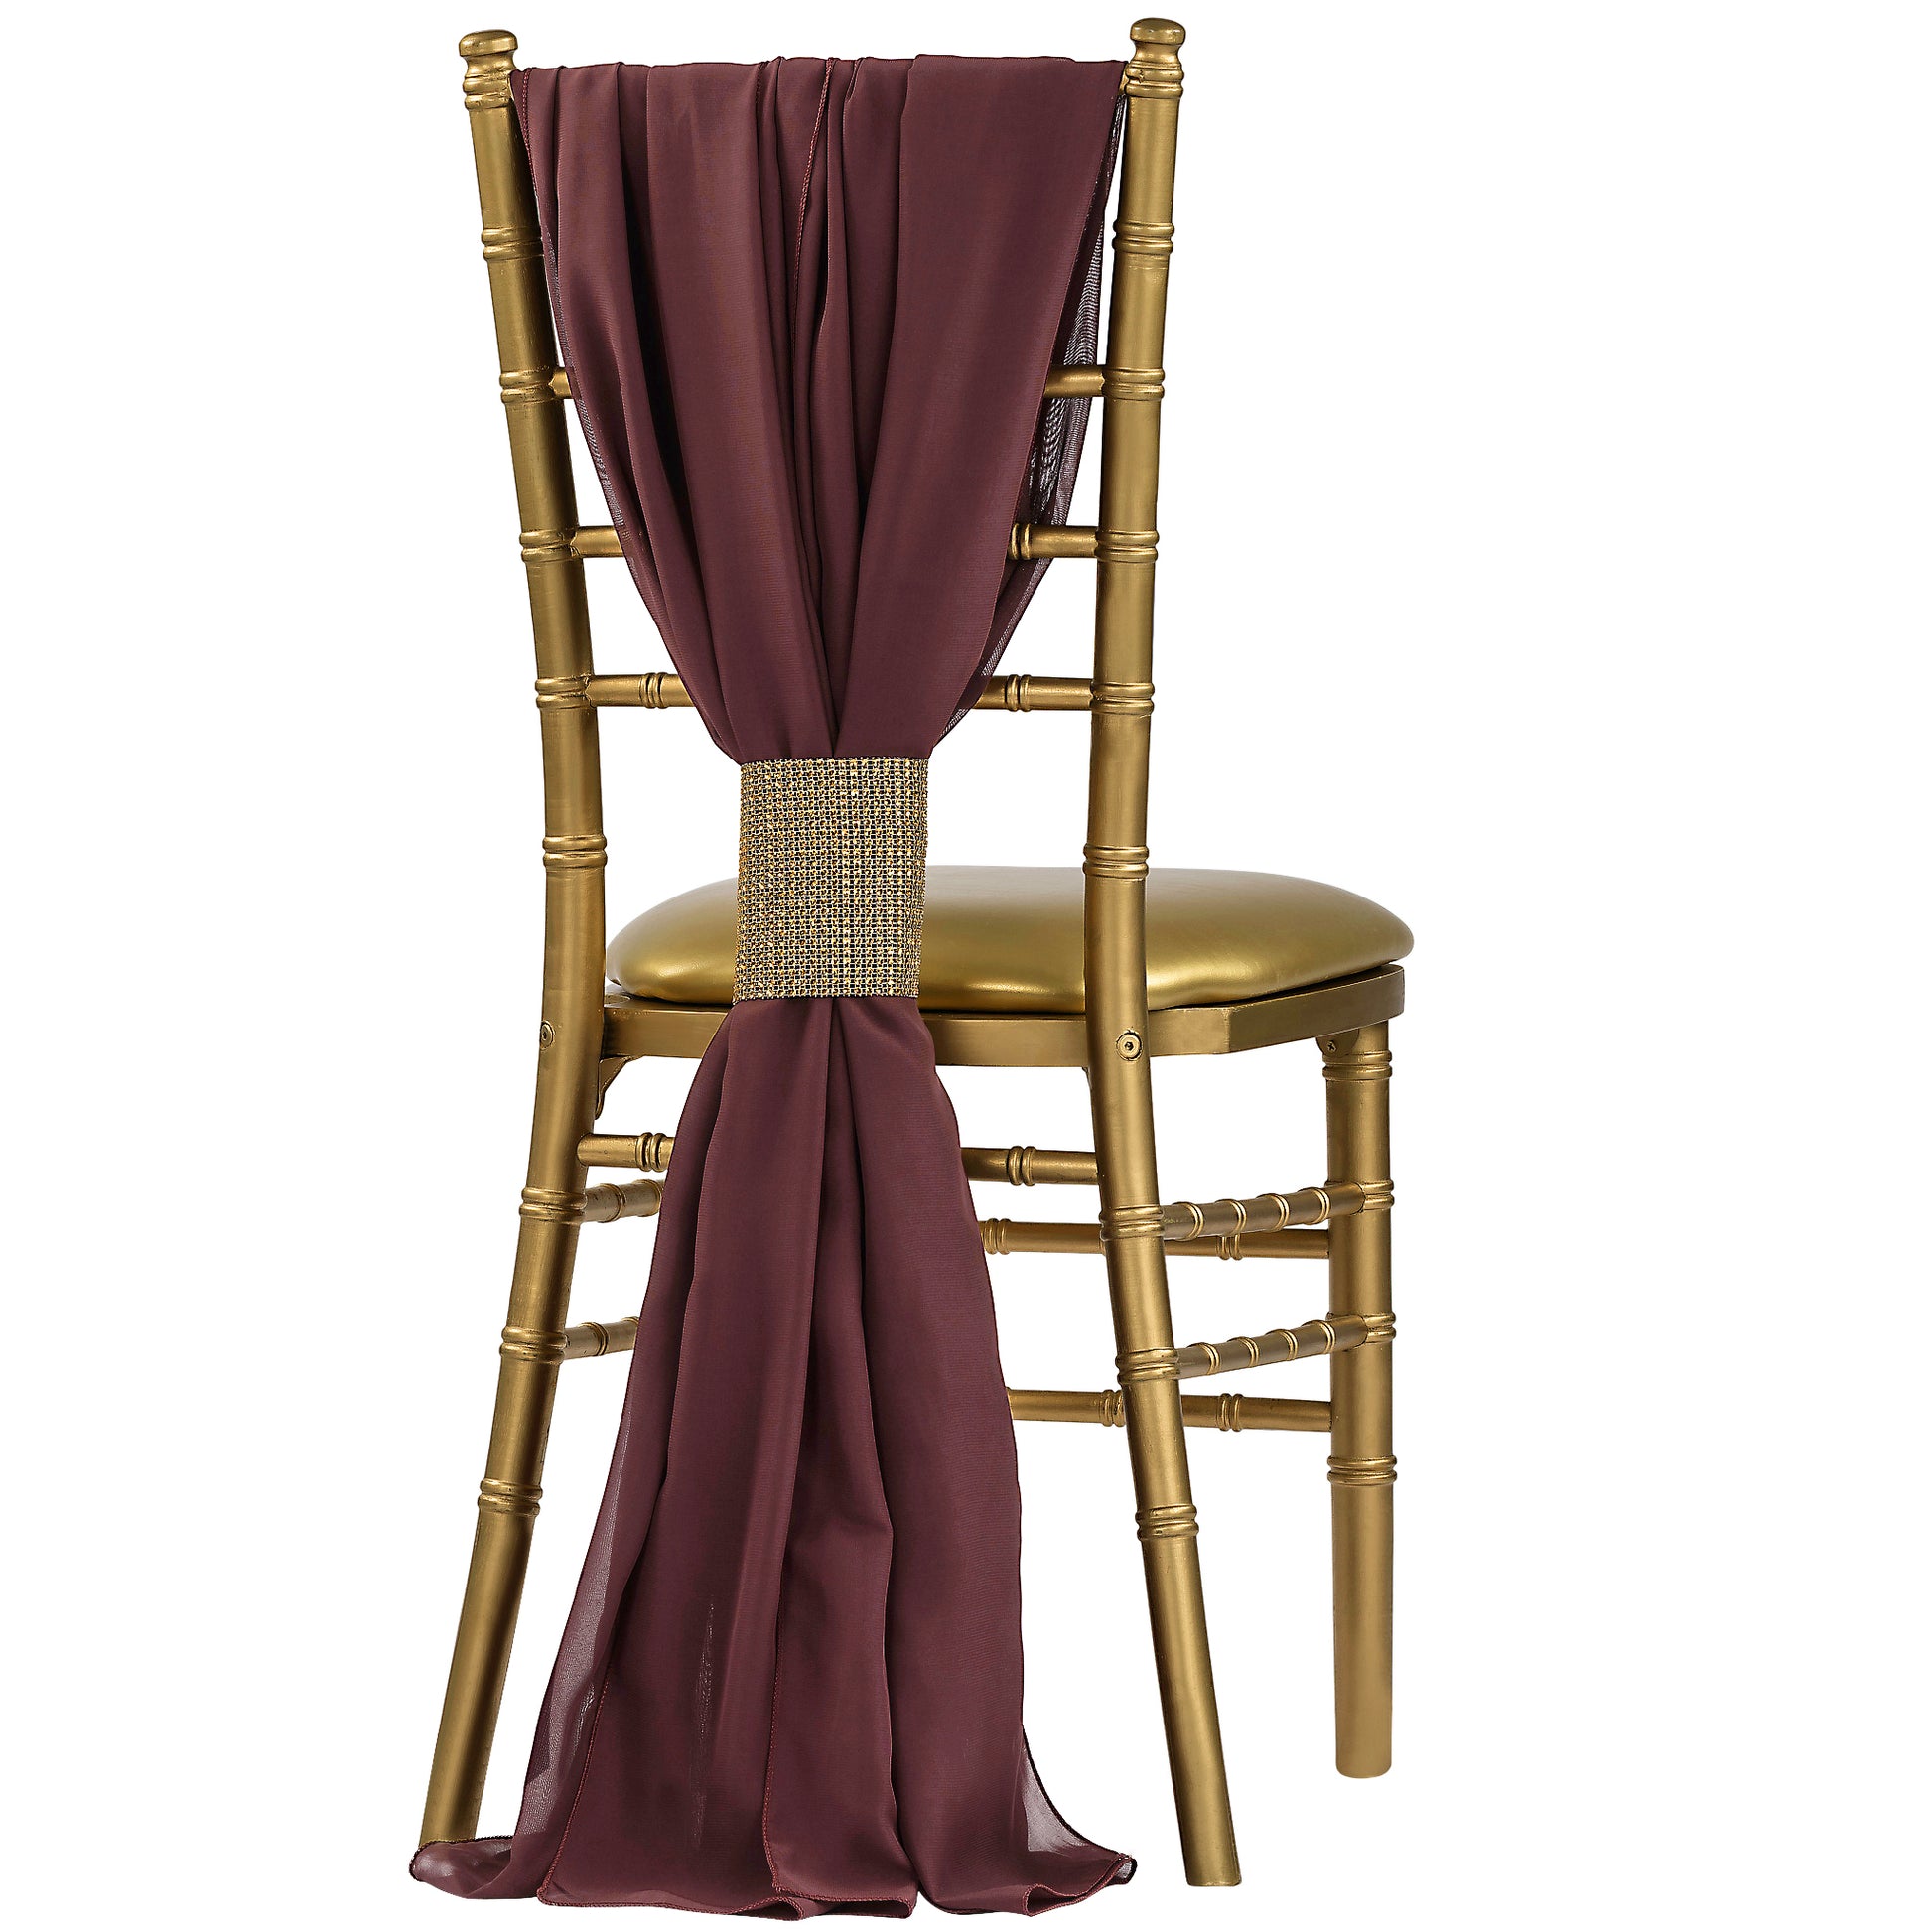 5pcs Pack of Chiffon Chair Sashes/Ties - Burgundy - CV Linens